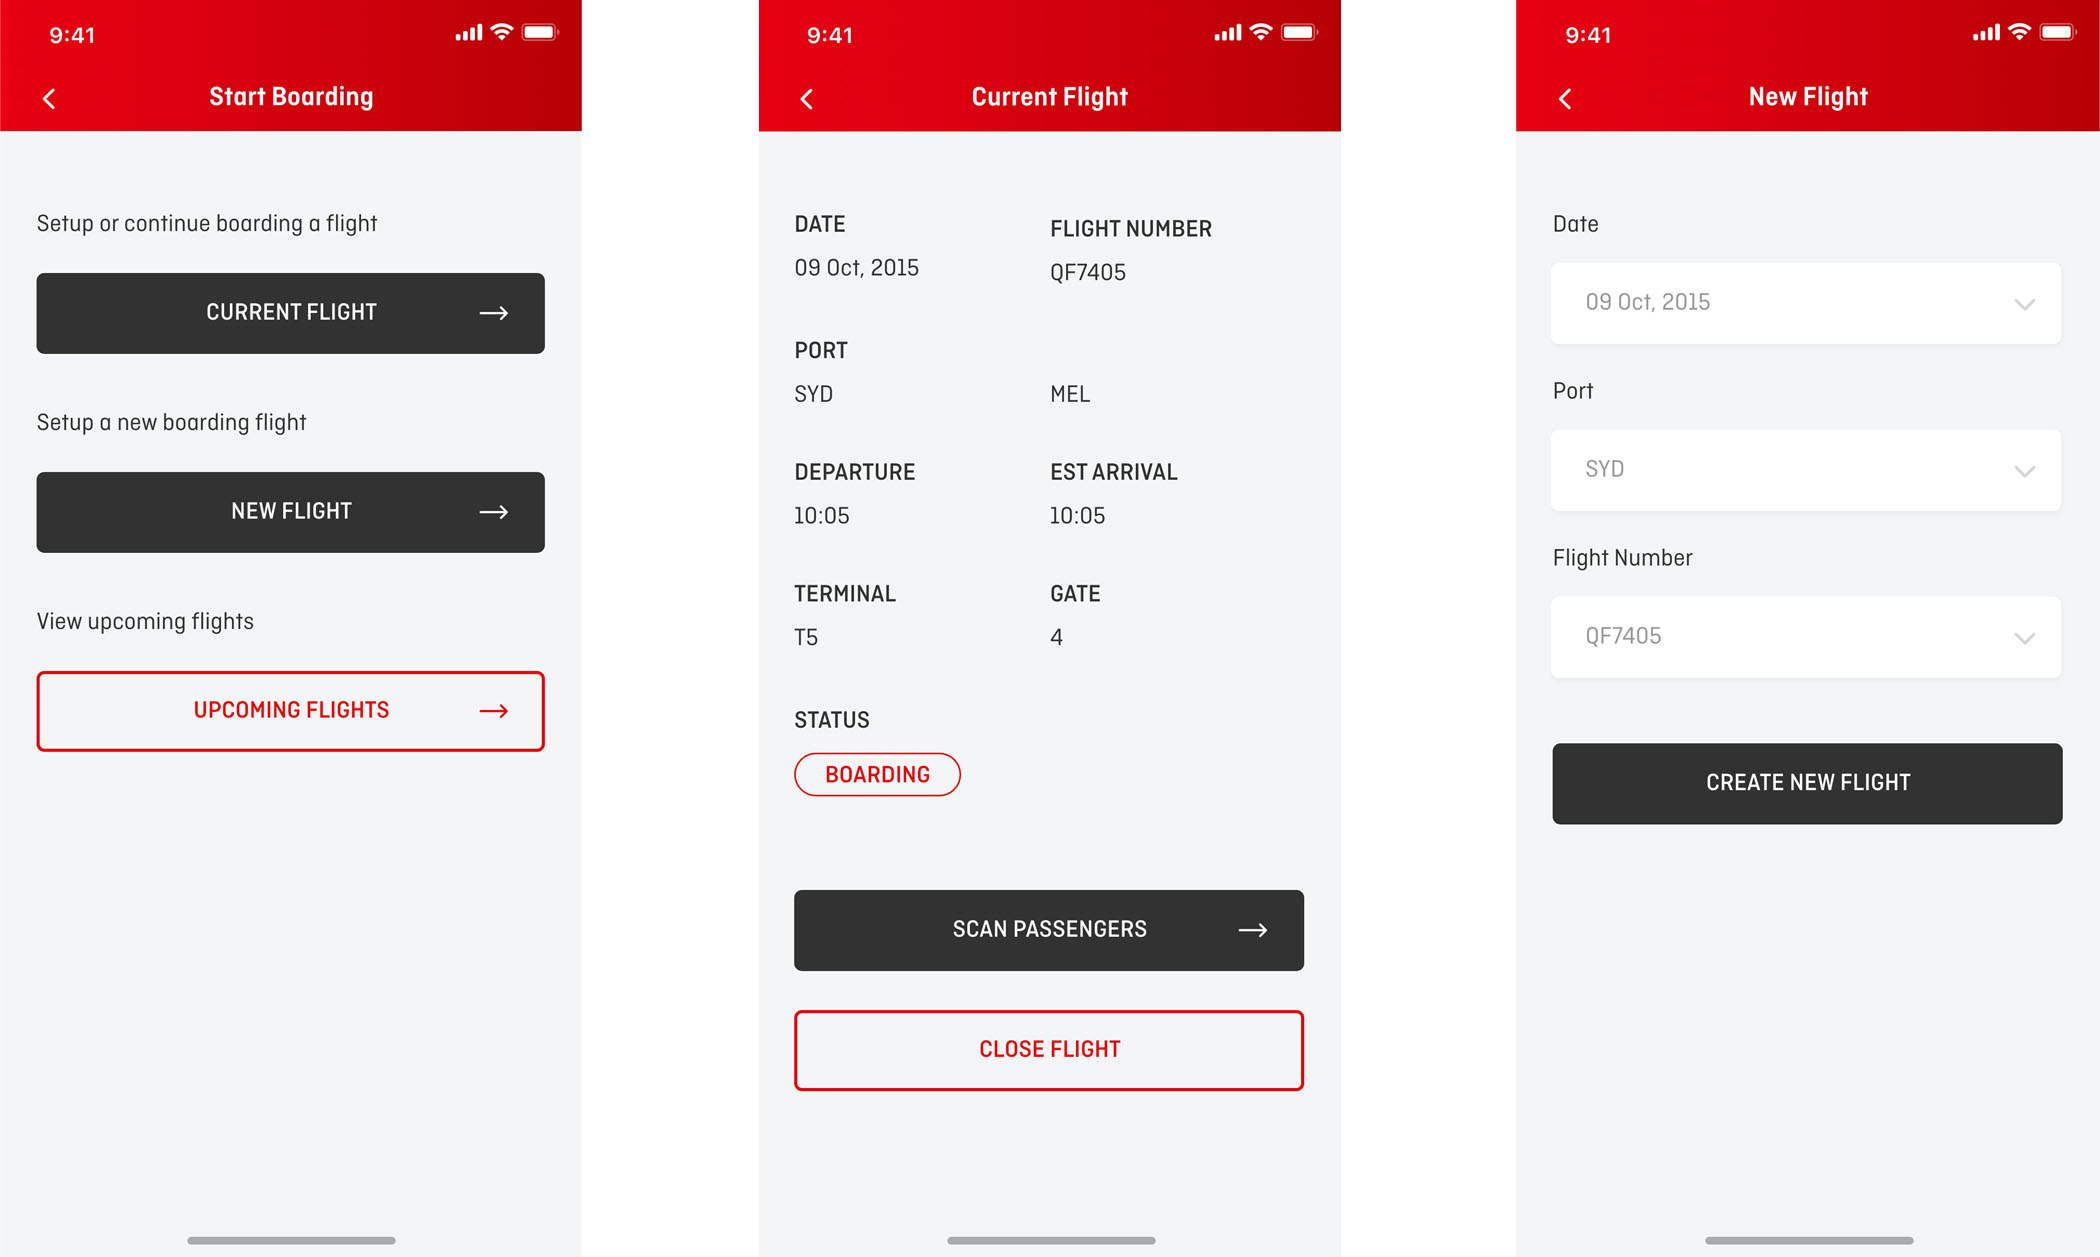 Qantas: Mobile Boarding Application - Screen 2